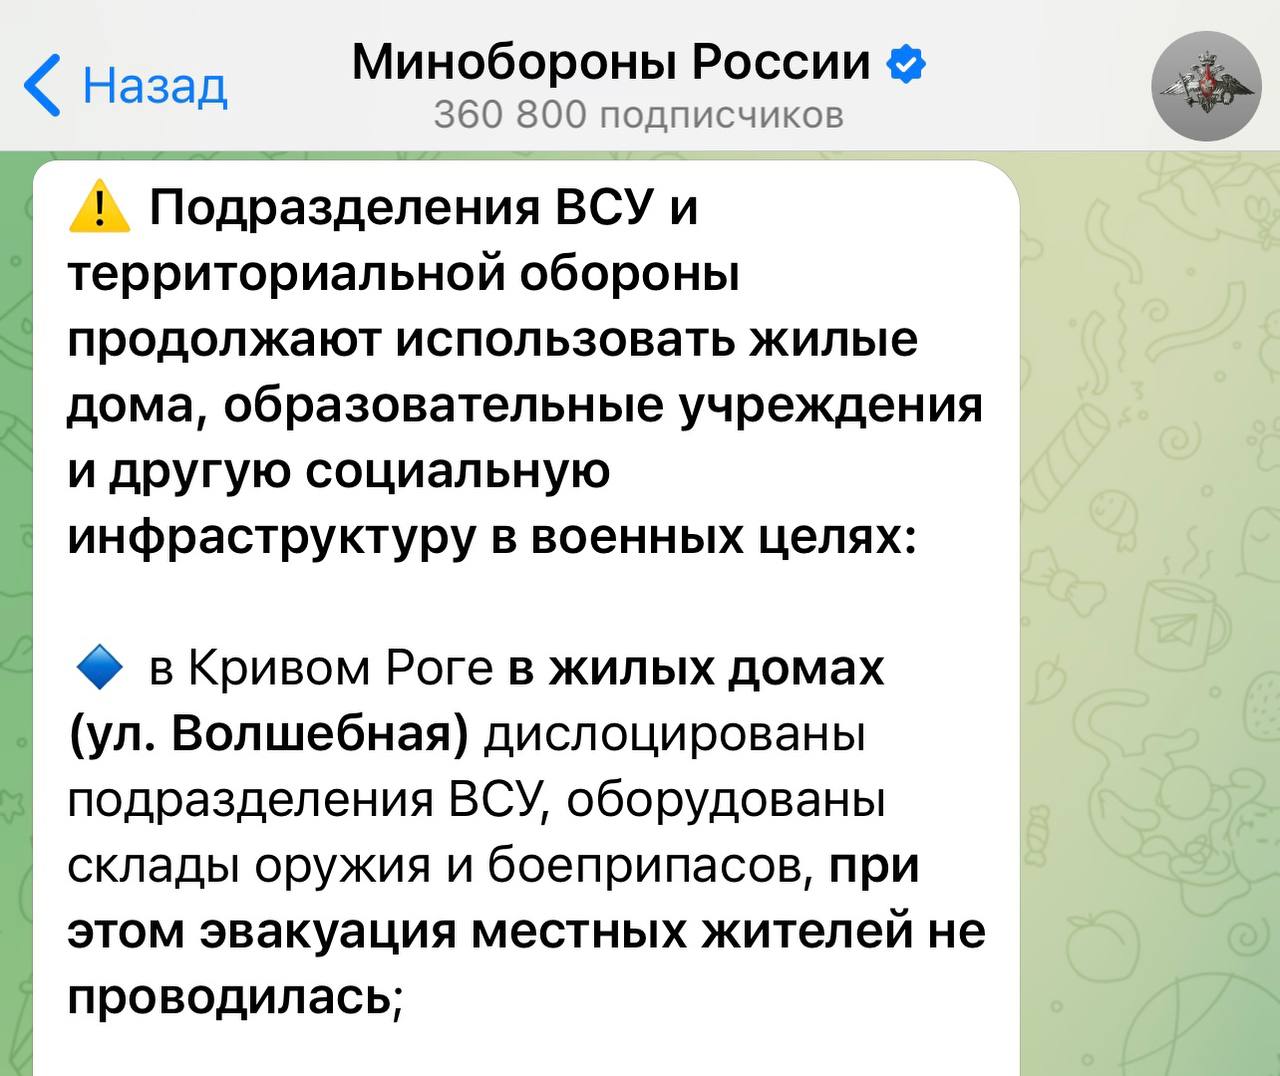 Також Міноборони РФ розповсюджує фейки про Кривий Ріг  - || фото: t.me/stop_fake_dp